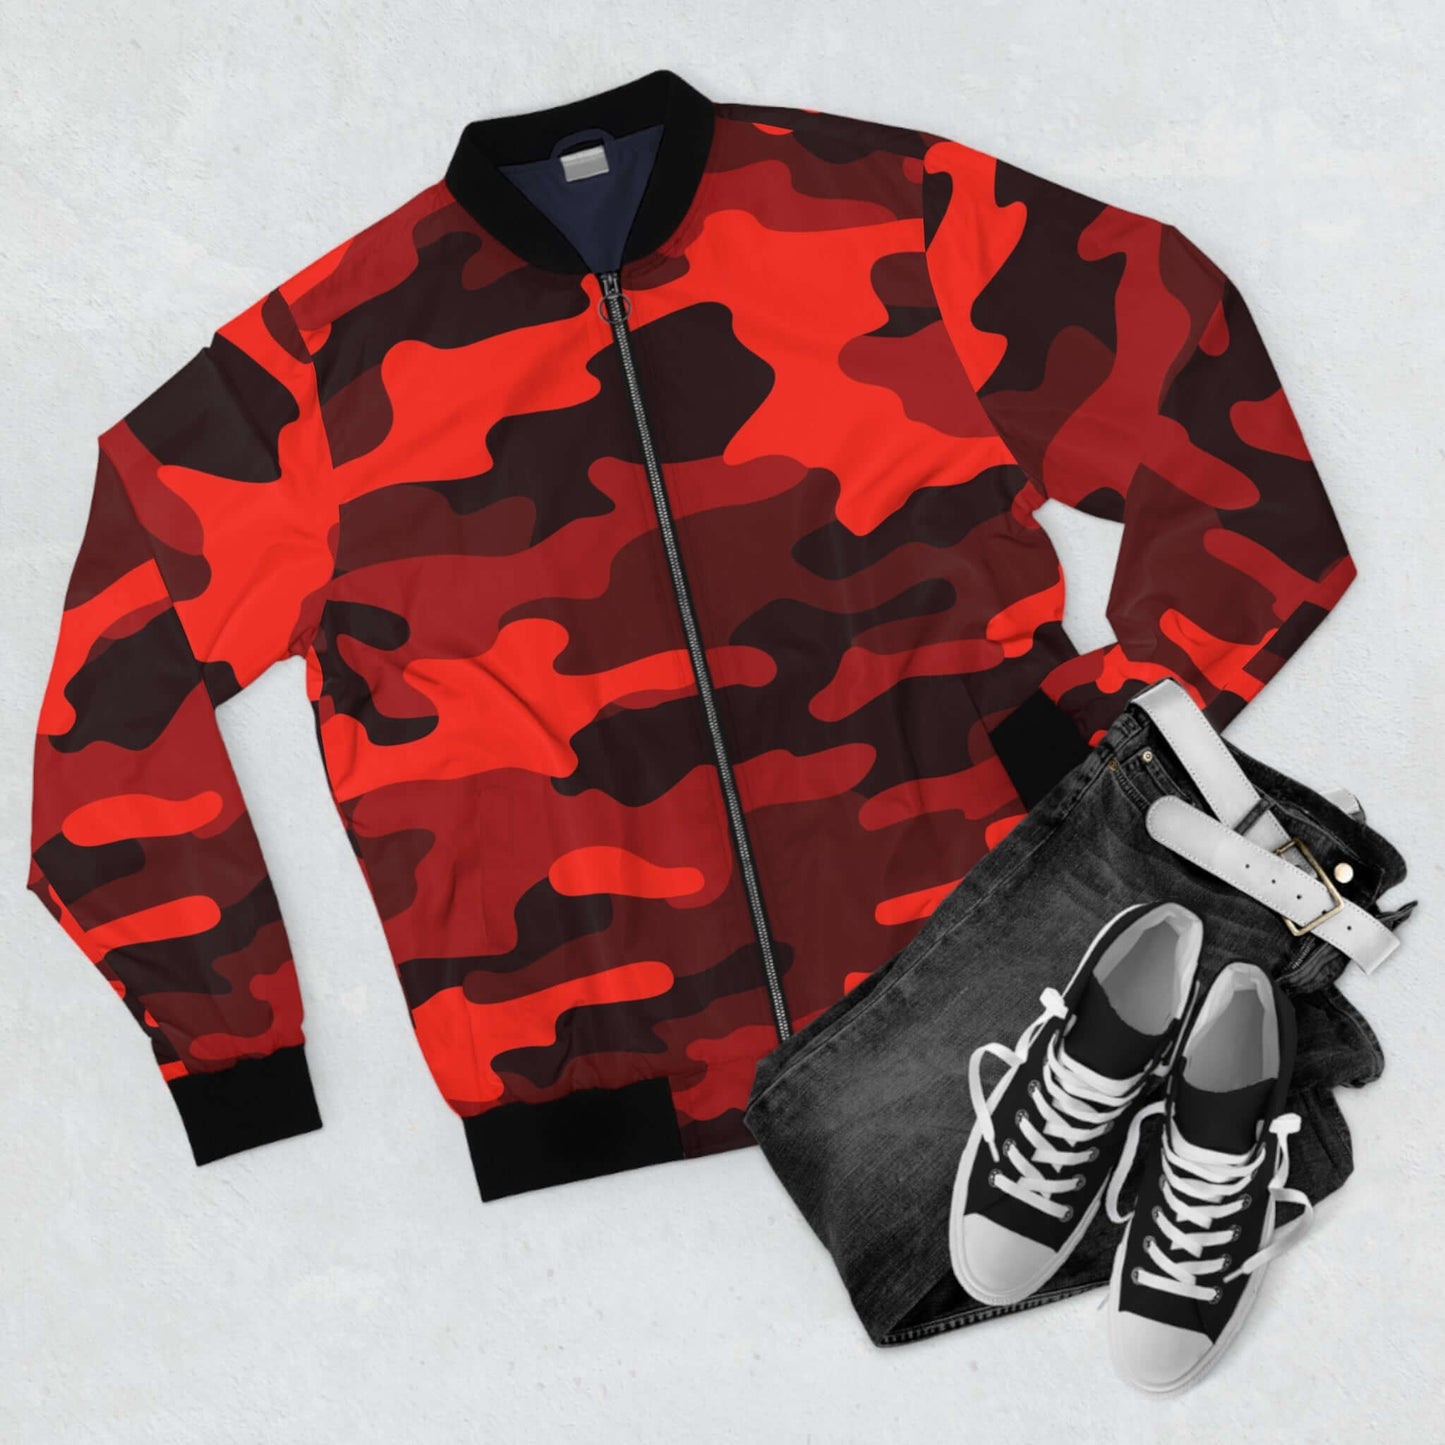 Scarlet Red & Black Camo Bomber Jacket